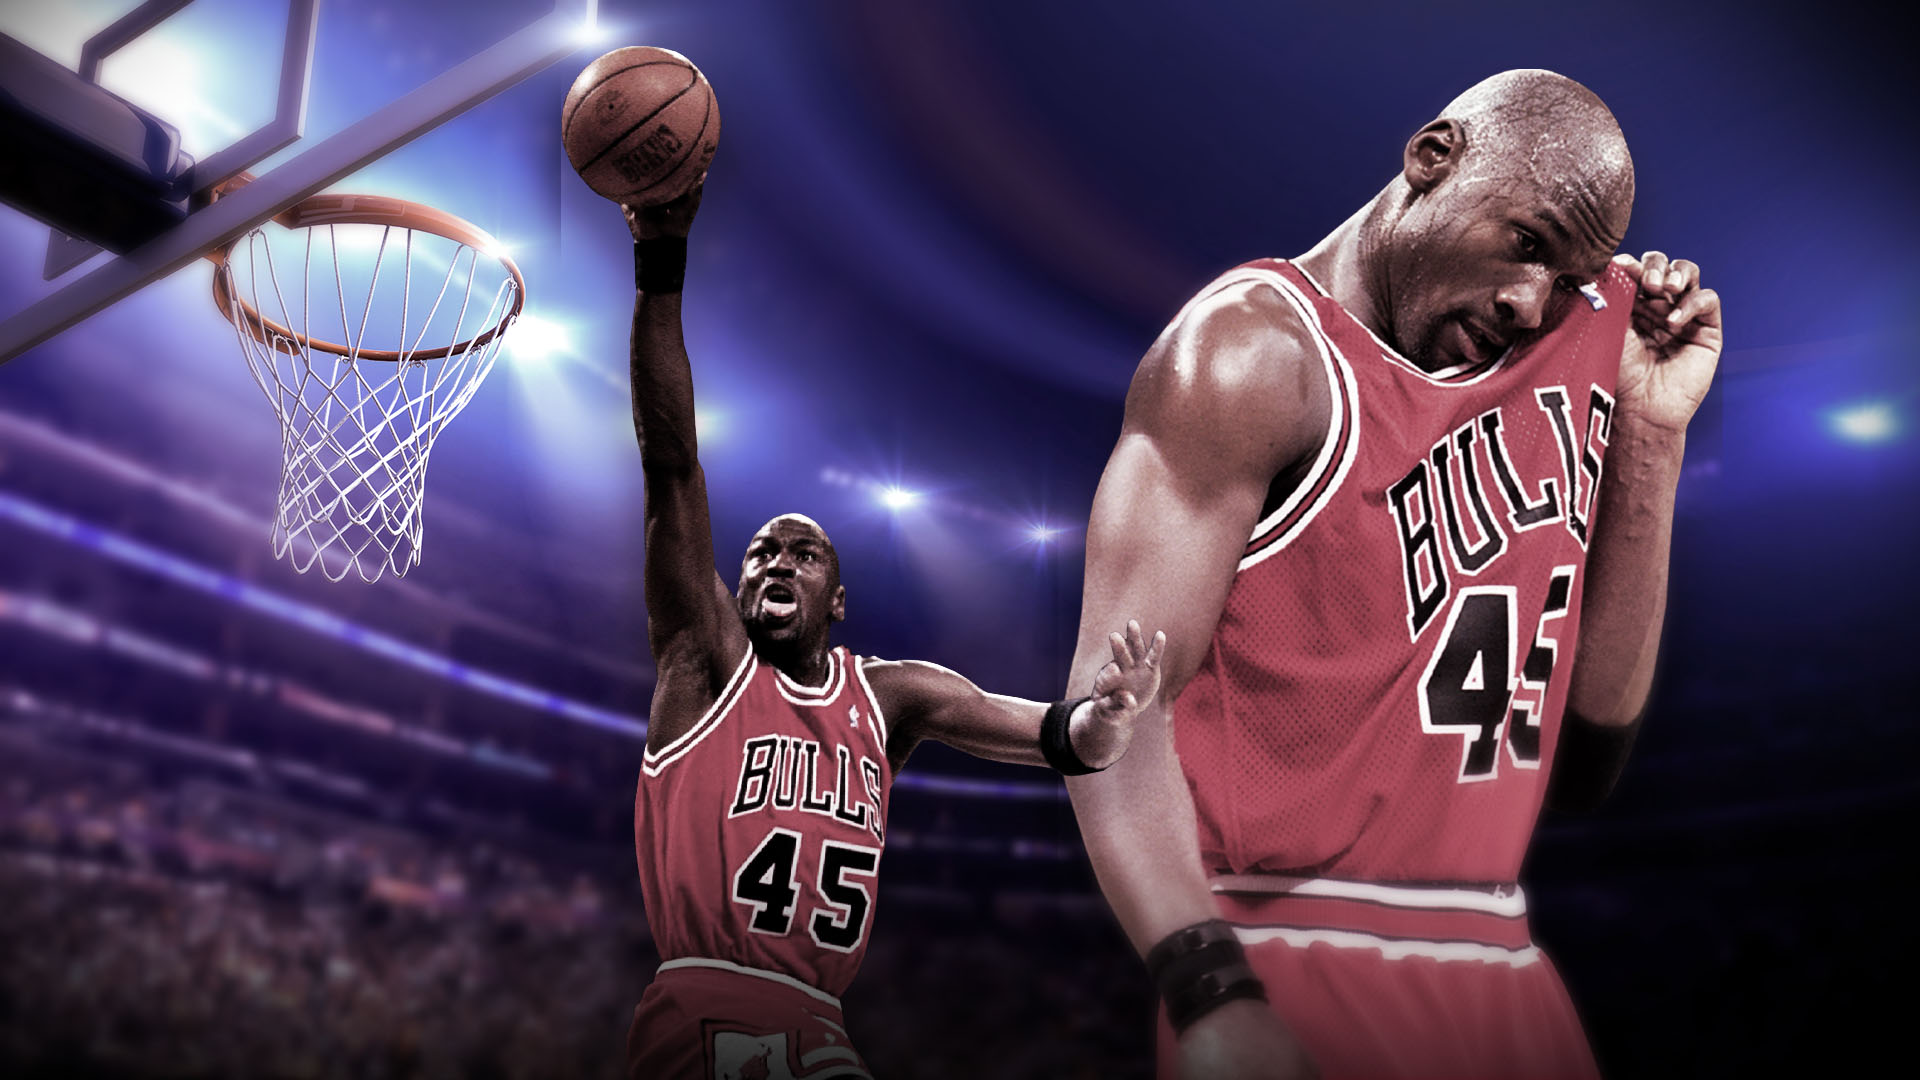 Después del tricampeonato de los Bulls, Jordan se retiró tras el asesinato de su padre. Volvió en el 95 para volver a liderar a Chicago a otros tres títulos de la NBA